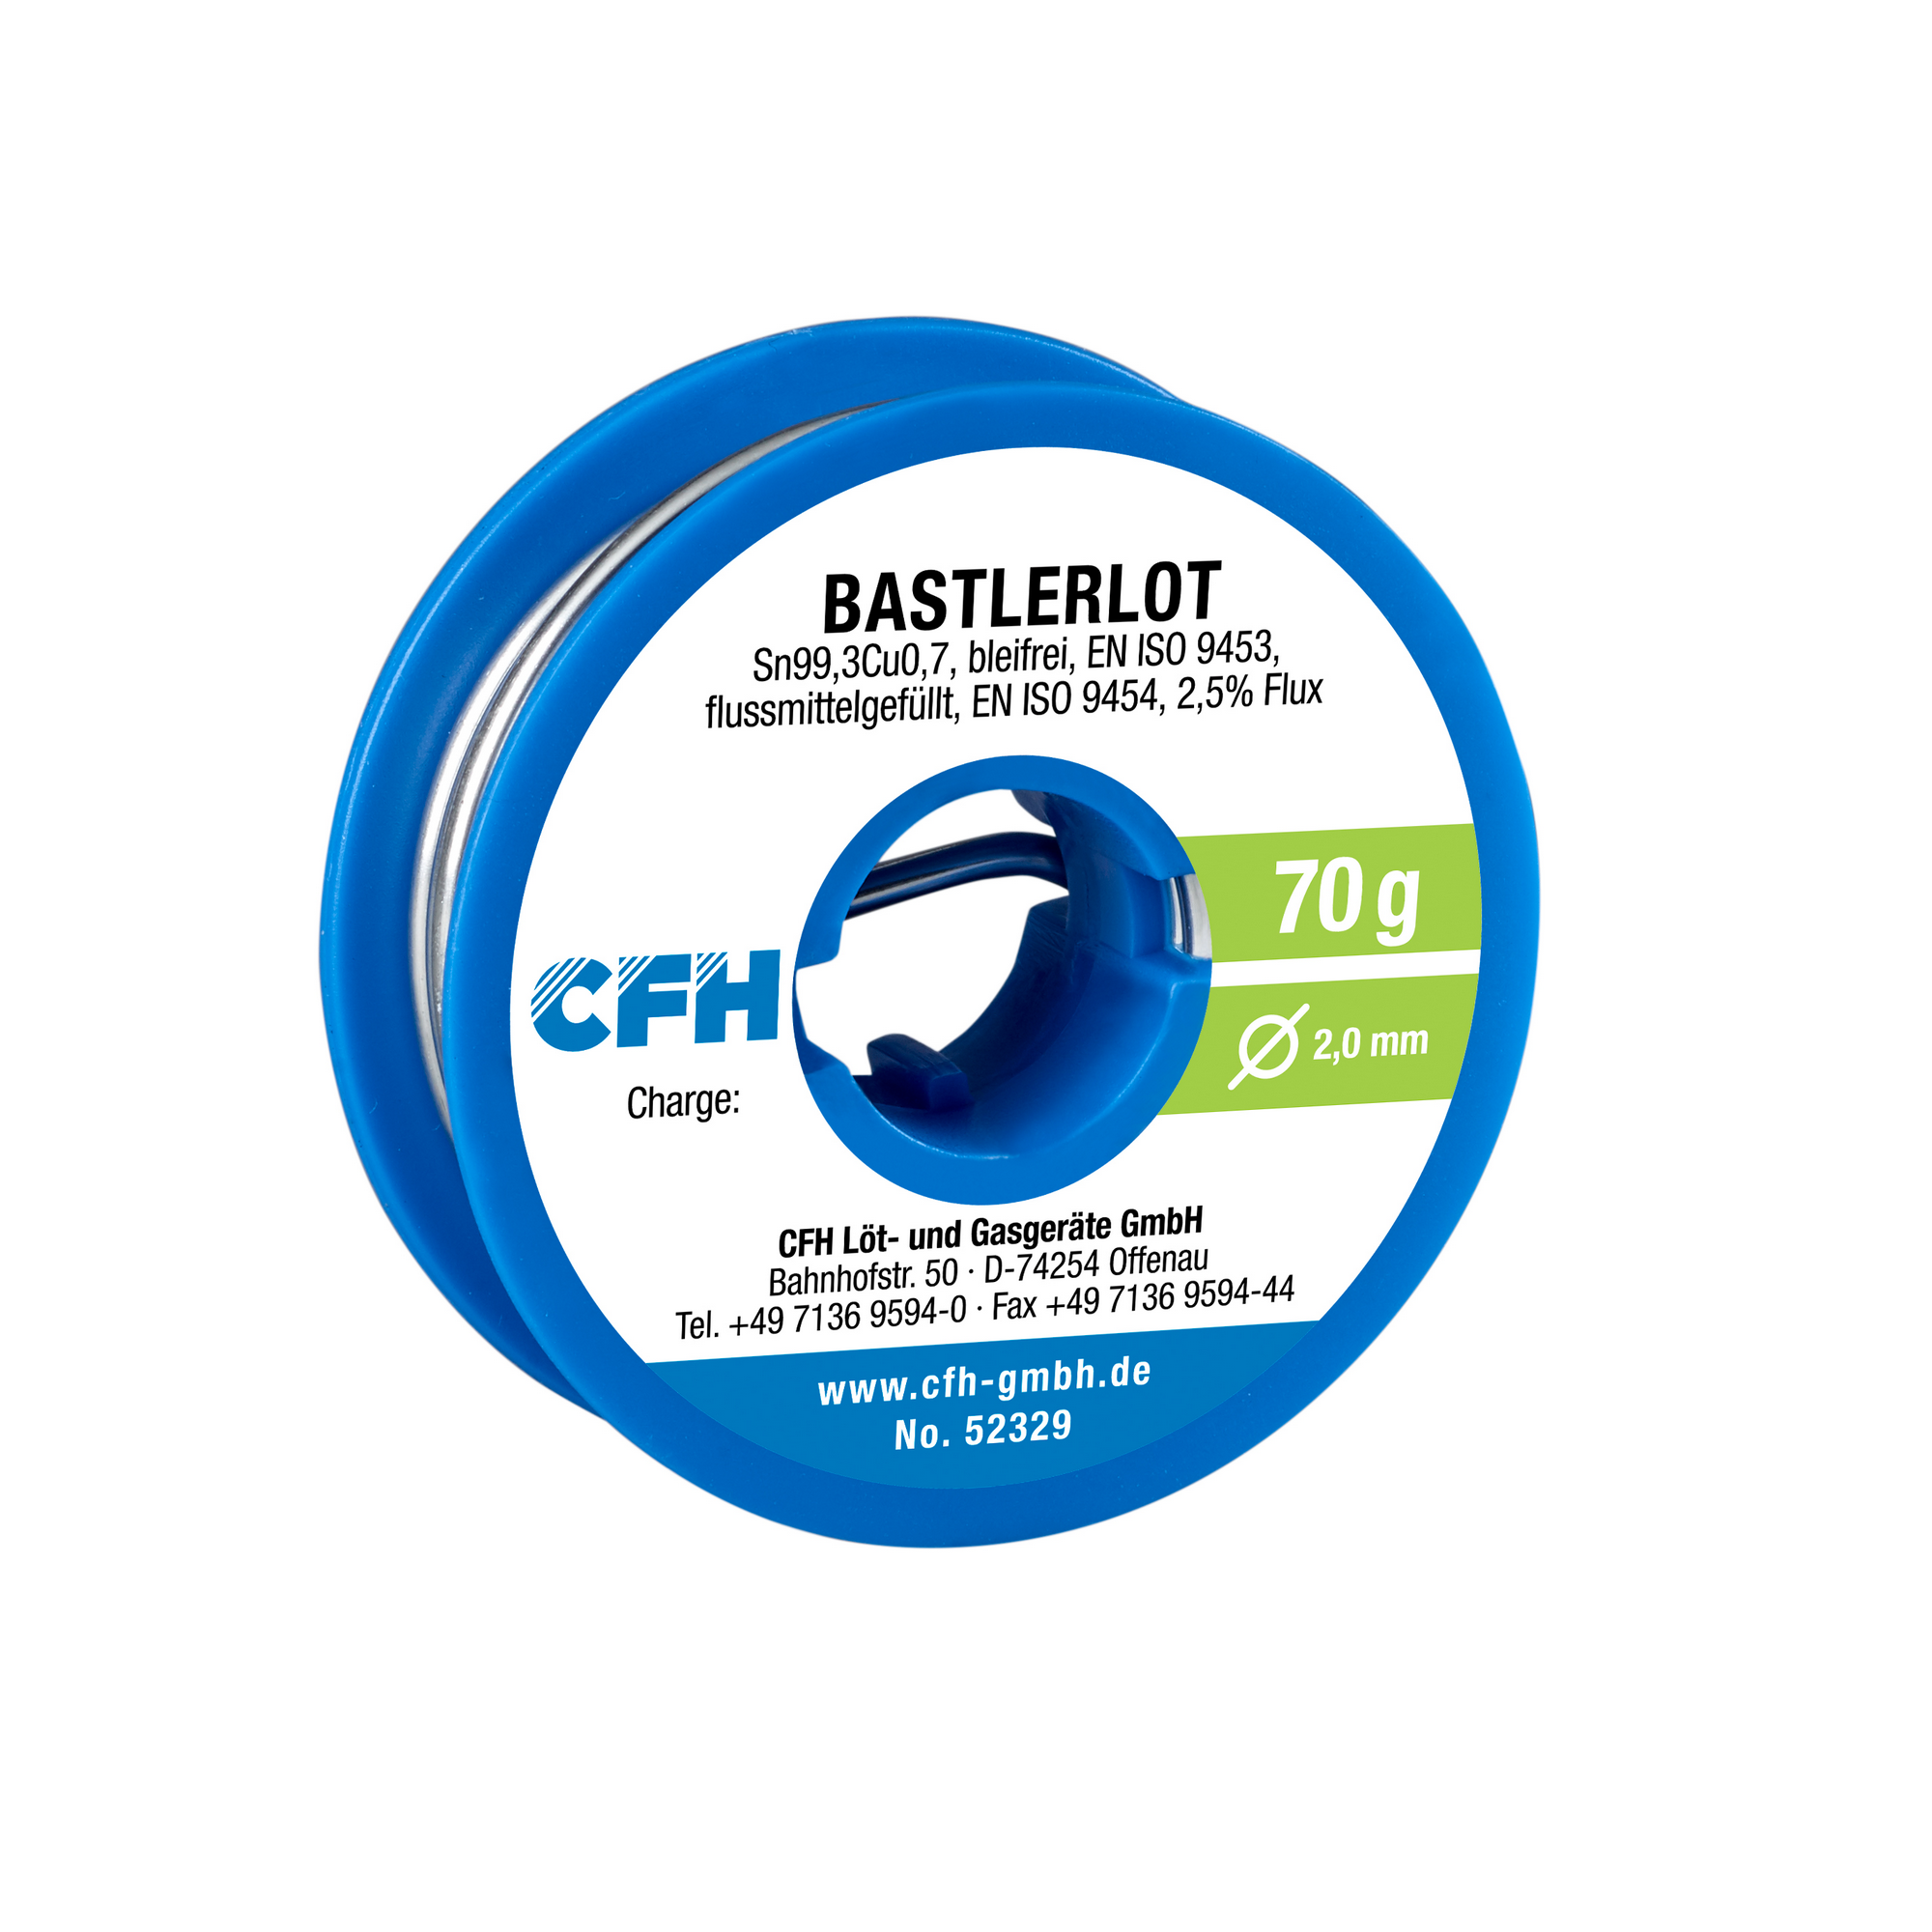 Bastlerlot bleifrei BL 329 70 g + product picture